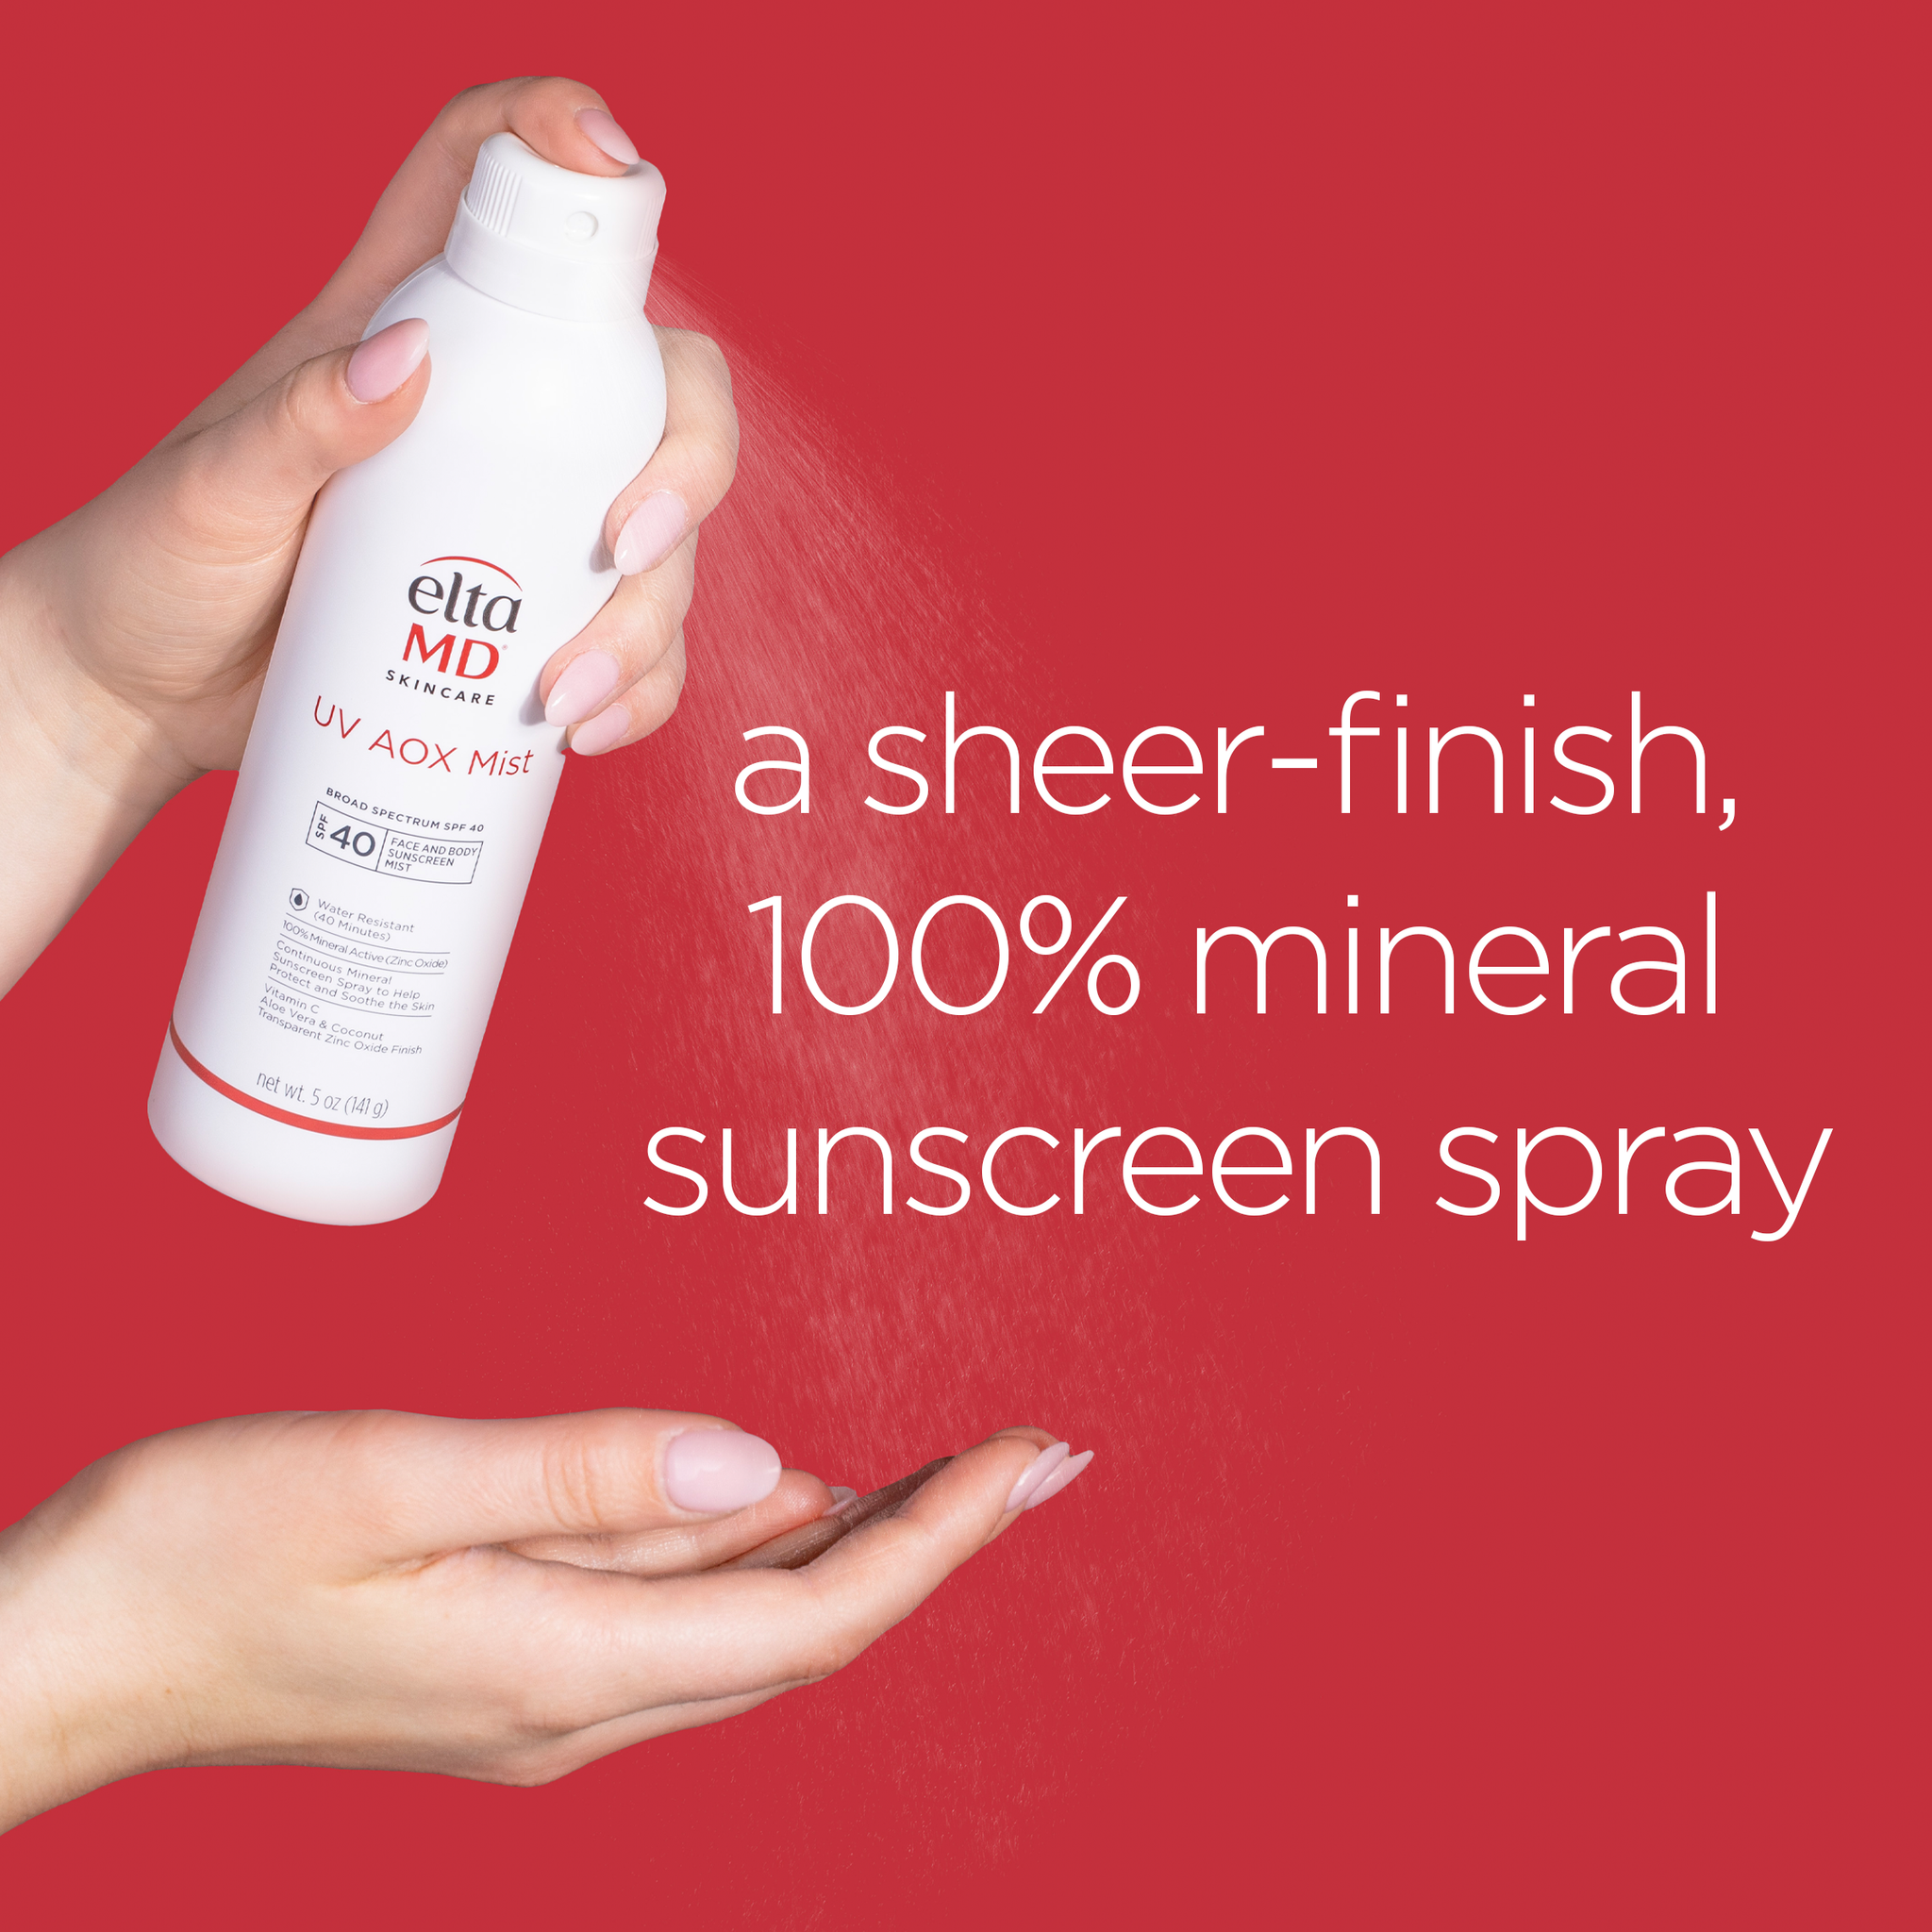 EltaMD UV AOX Mist | Sunscreen SPF 40